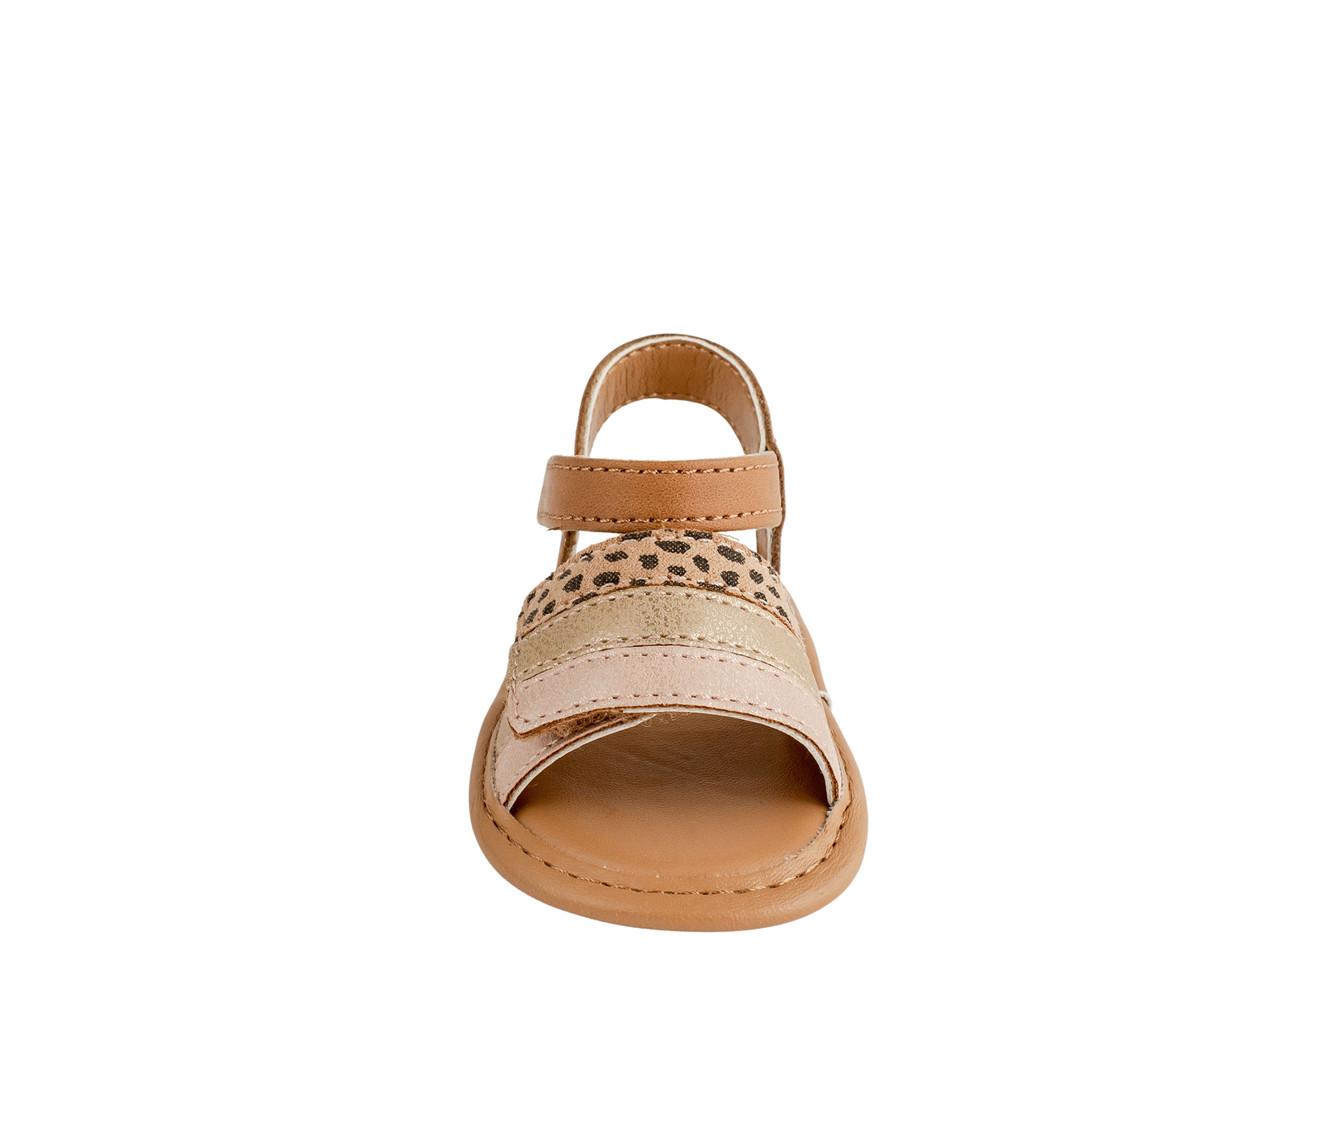 Girls' Baby Deer Infant Ashlee Crib Shoe Sandals